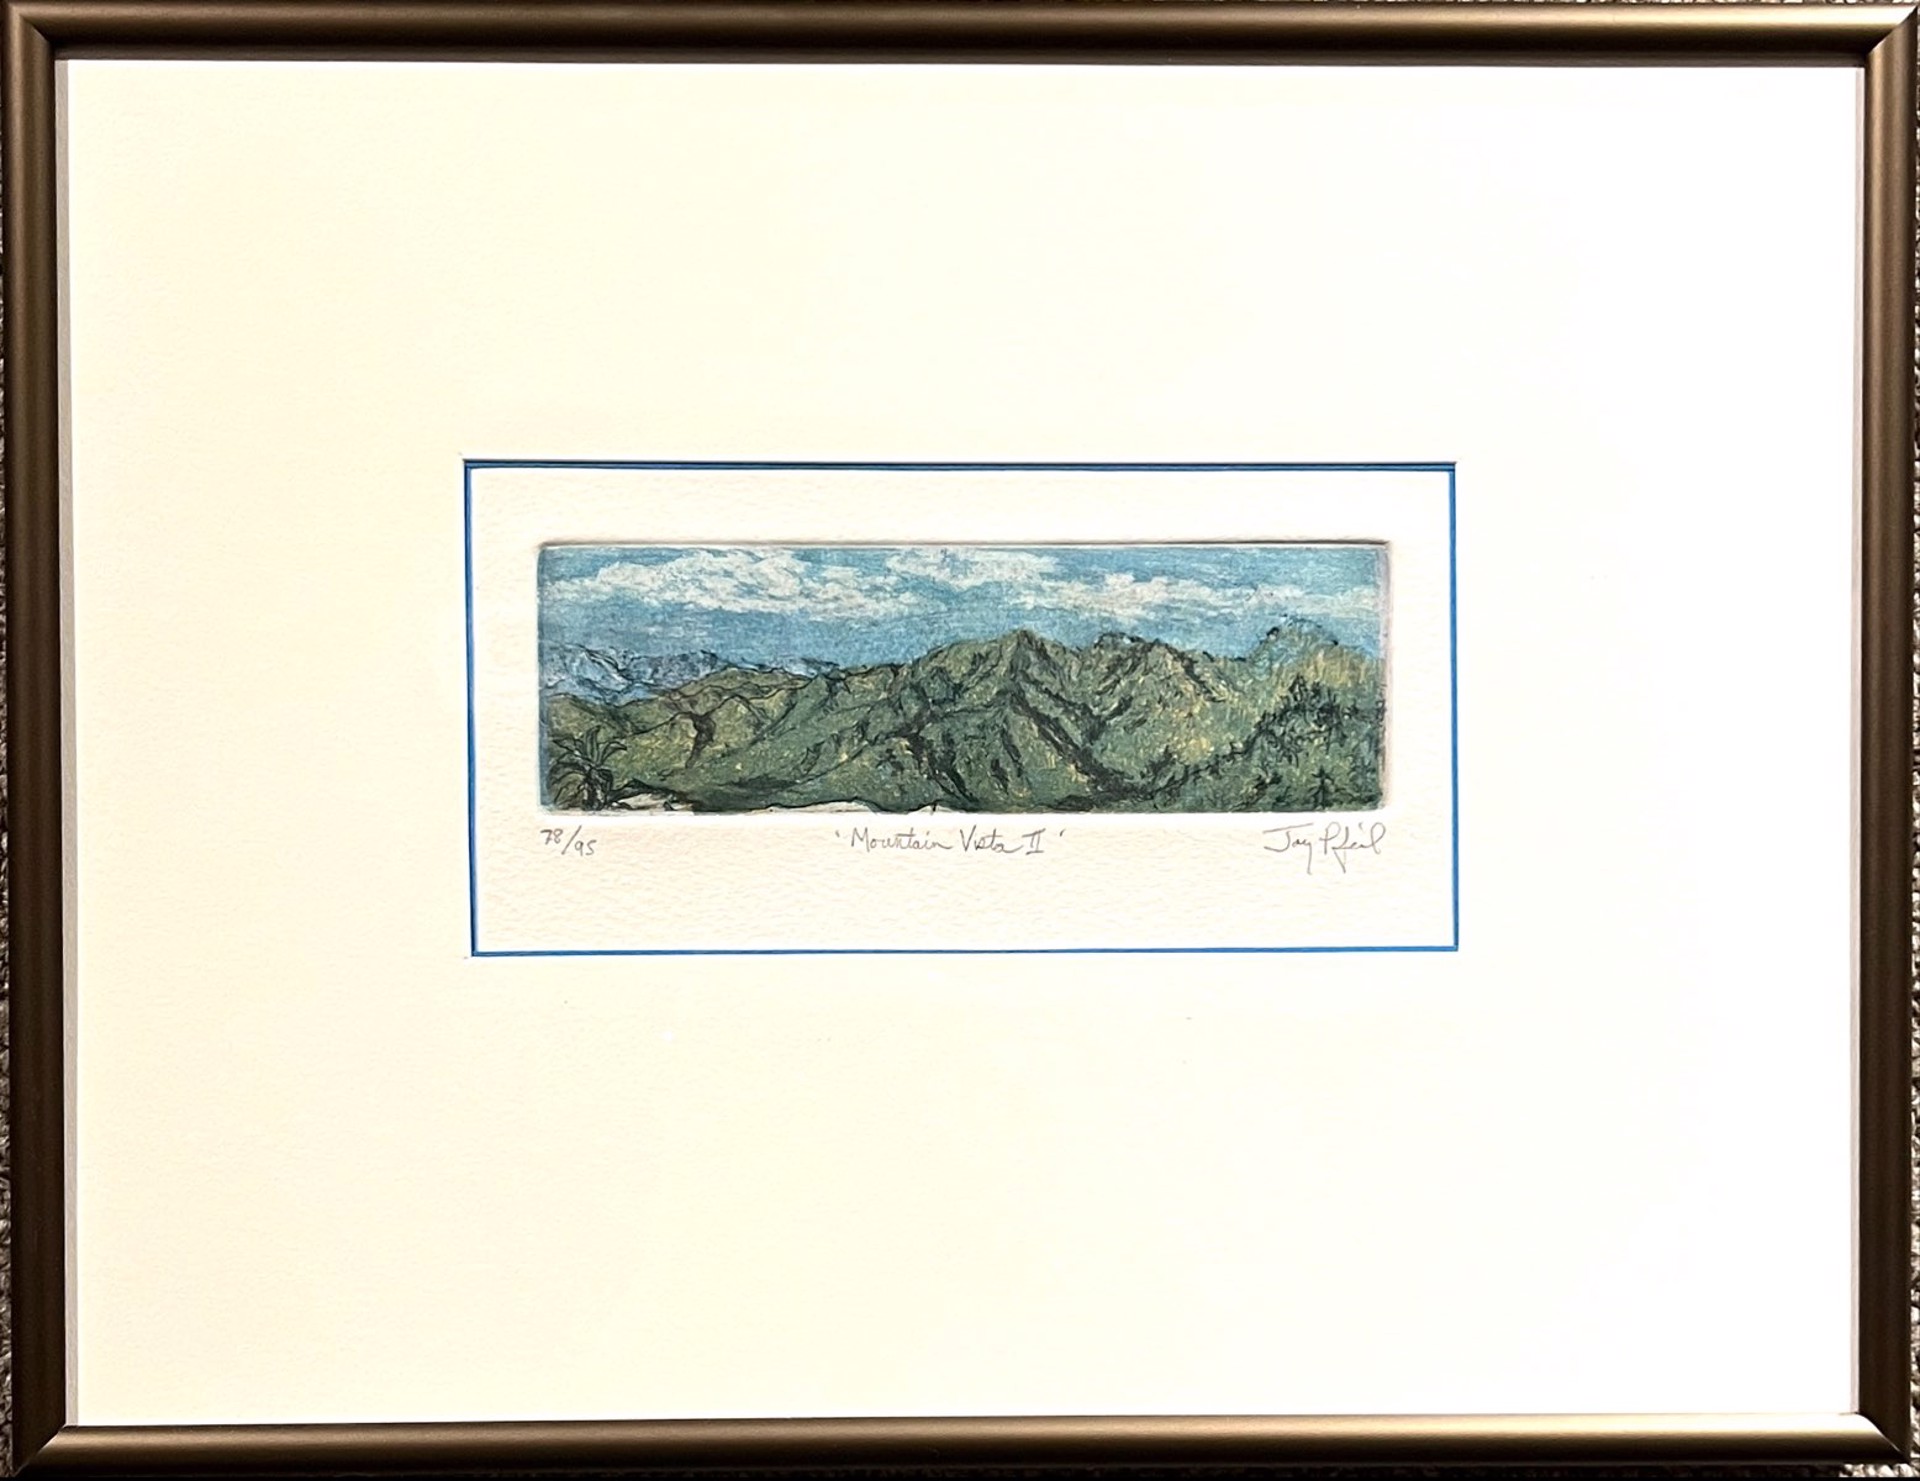 Mountain Vista II (78/95) by Jay Pfeil